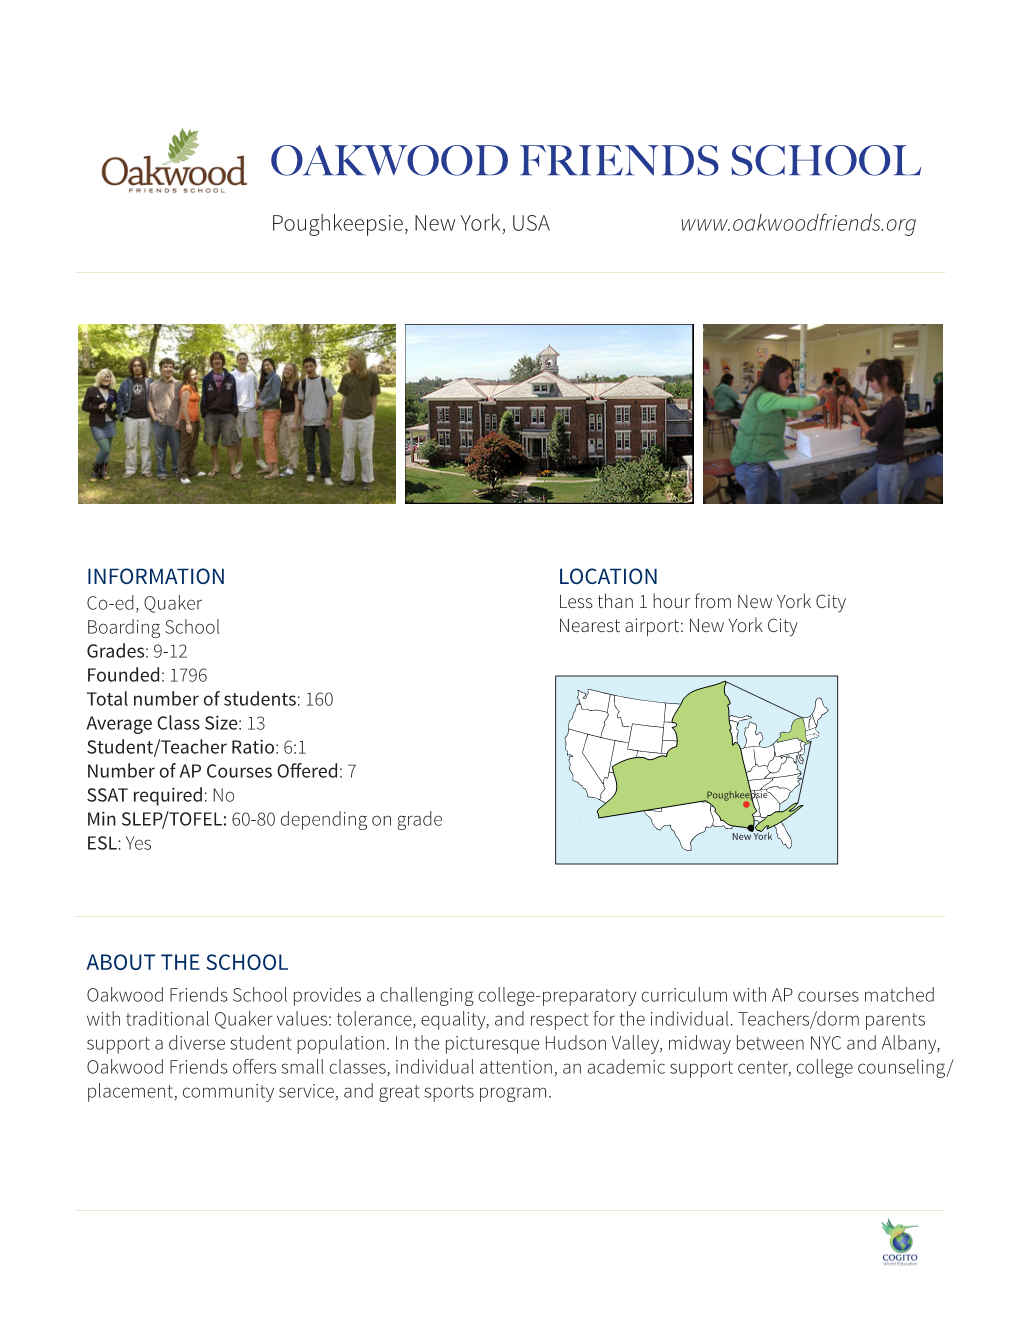 OAKWOOD FRIENDS SCHOOL Poughkeepsie, New York, USA